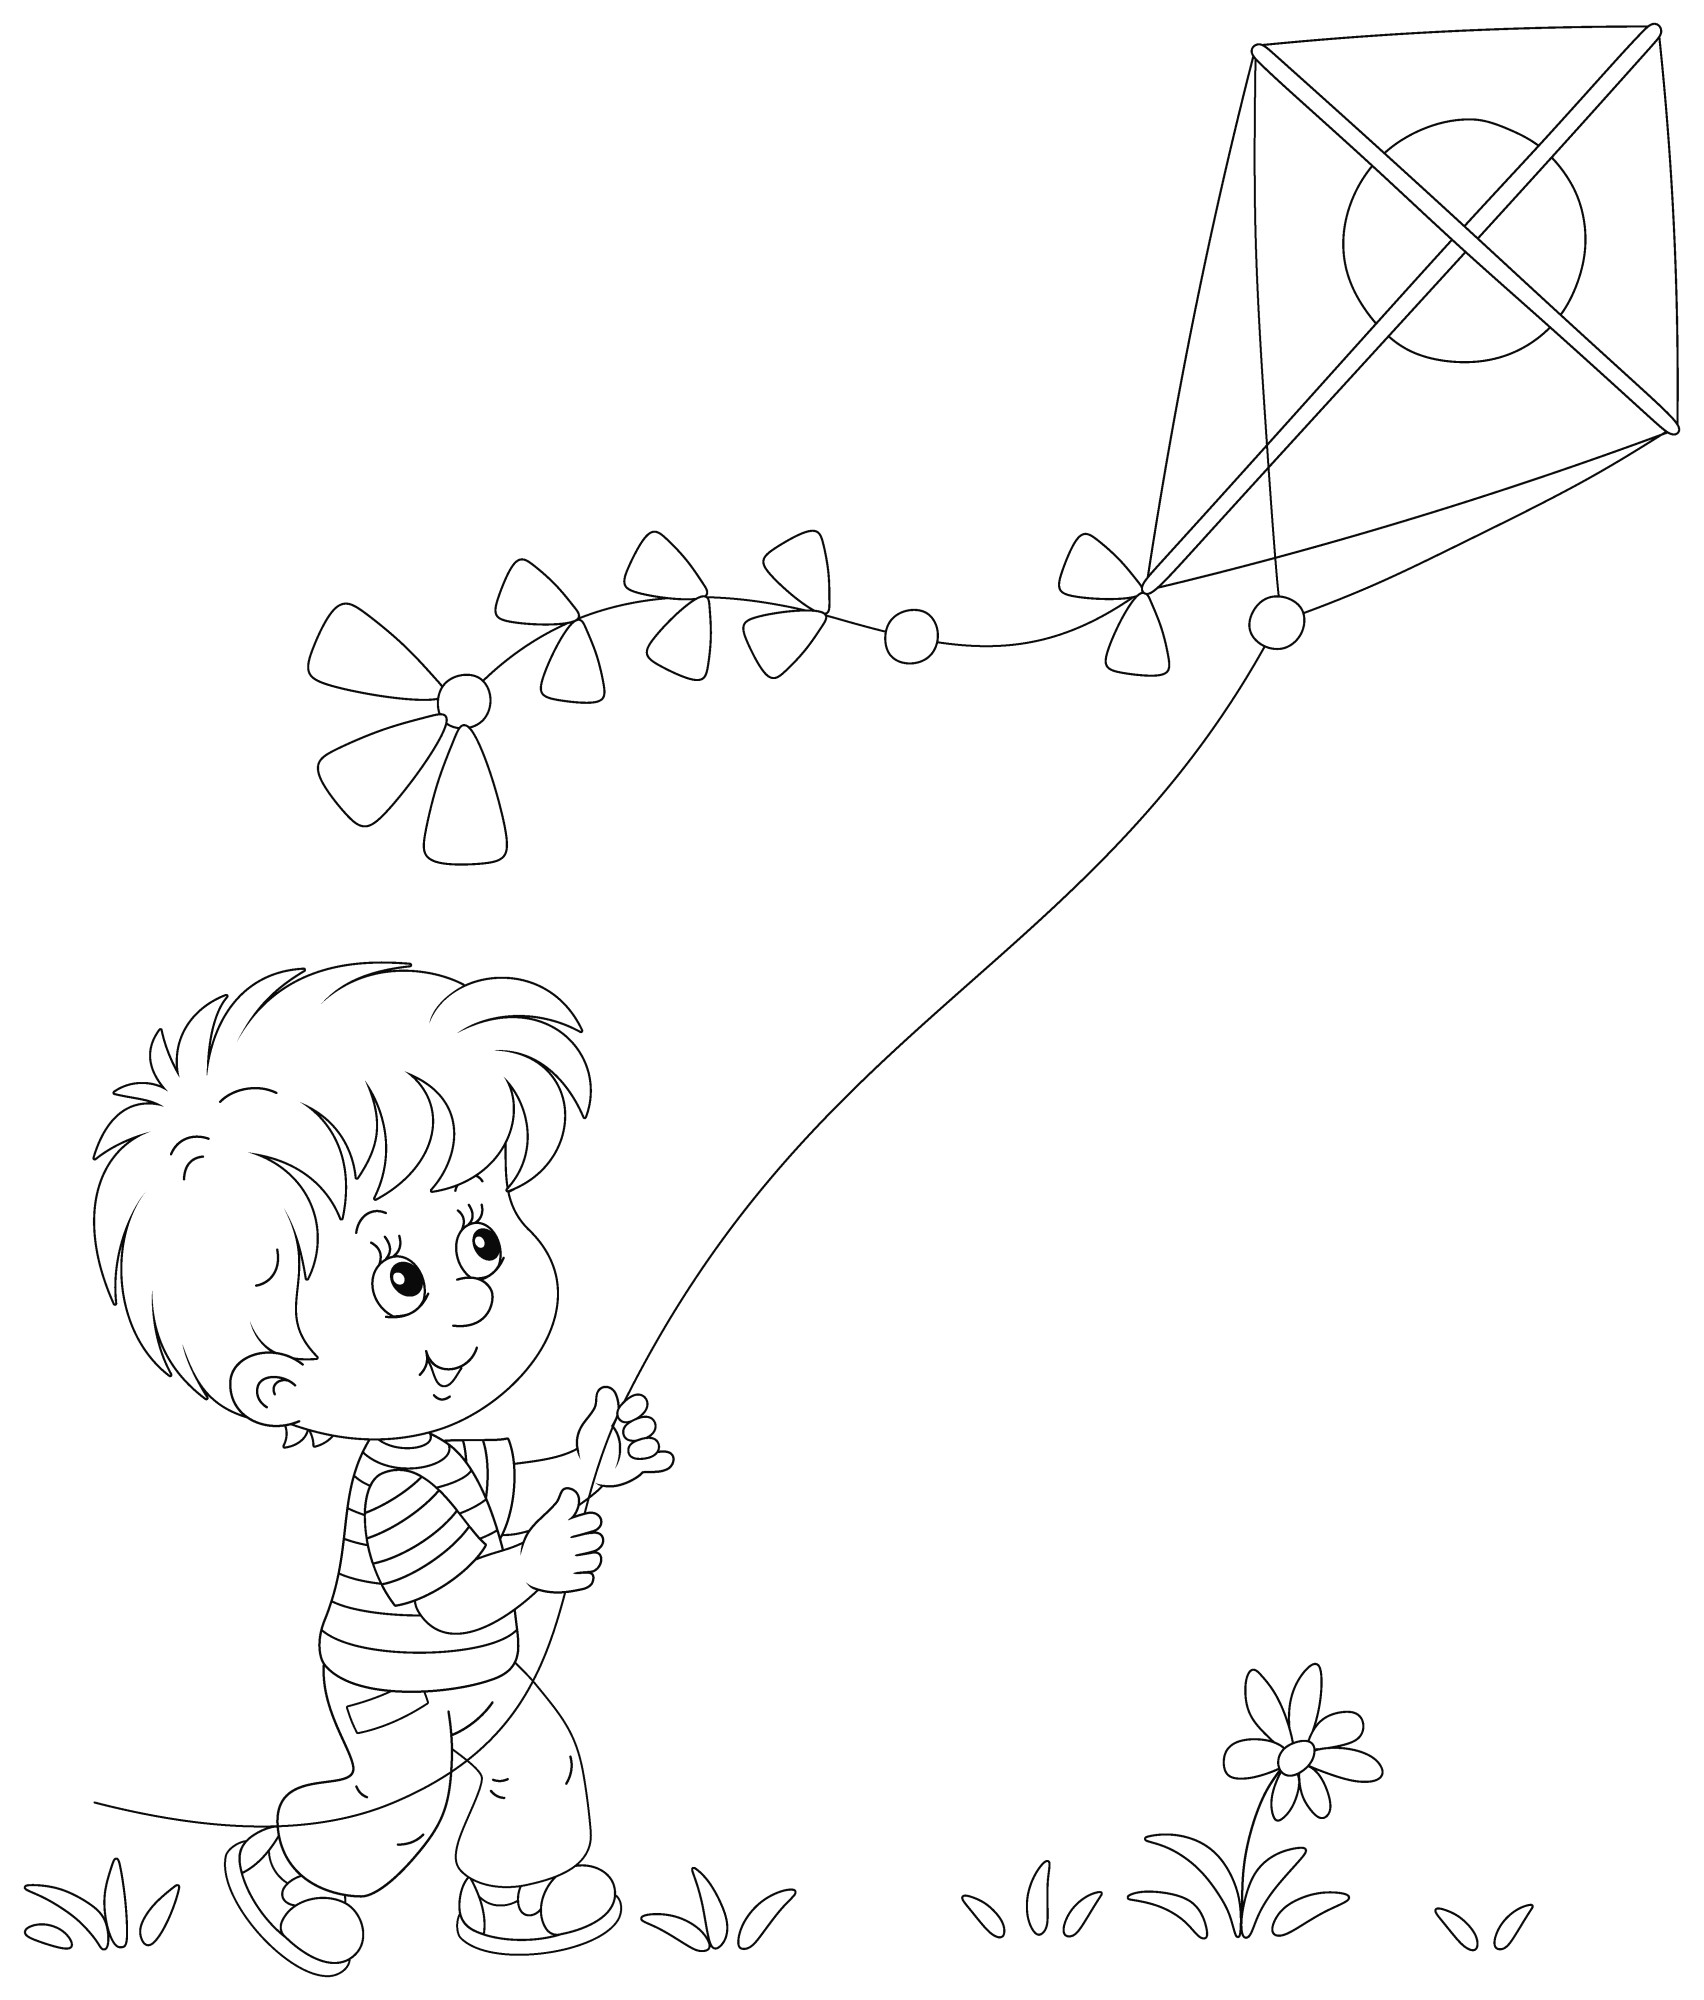 Раскраска для детей: мальчик в поле играет с воздушным змеем